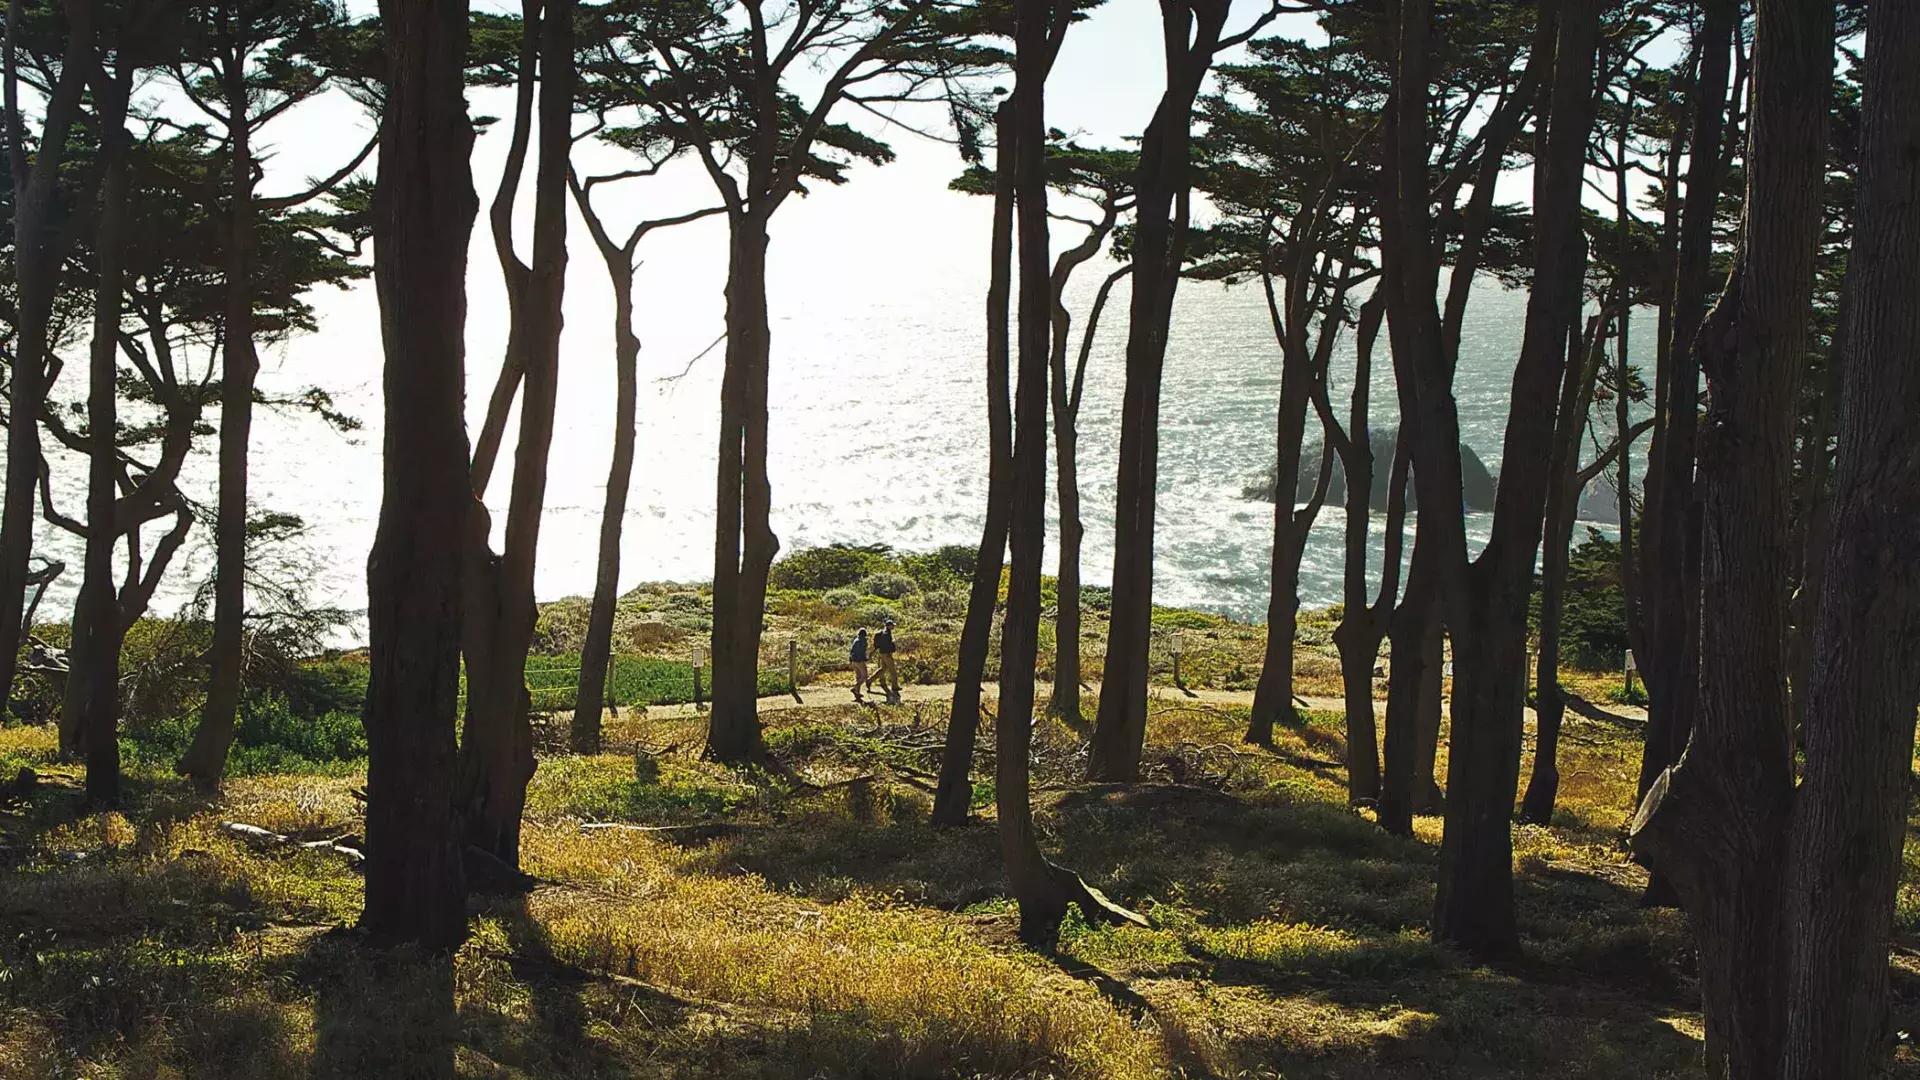 徒步旅行者沿着土地尽头小径的一段树木繁茂的路段行走, com o Oceano Pacífico ao fundo.